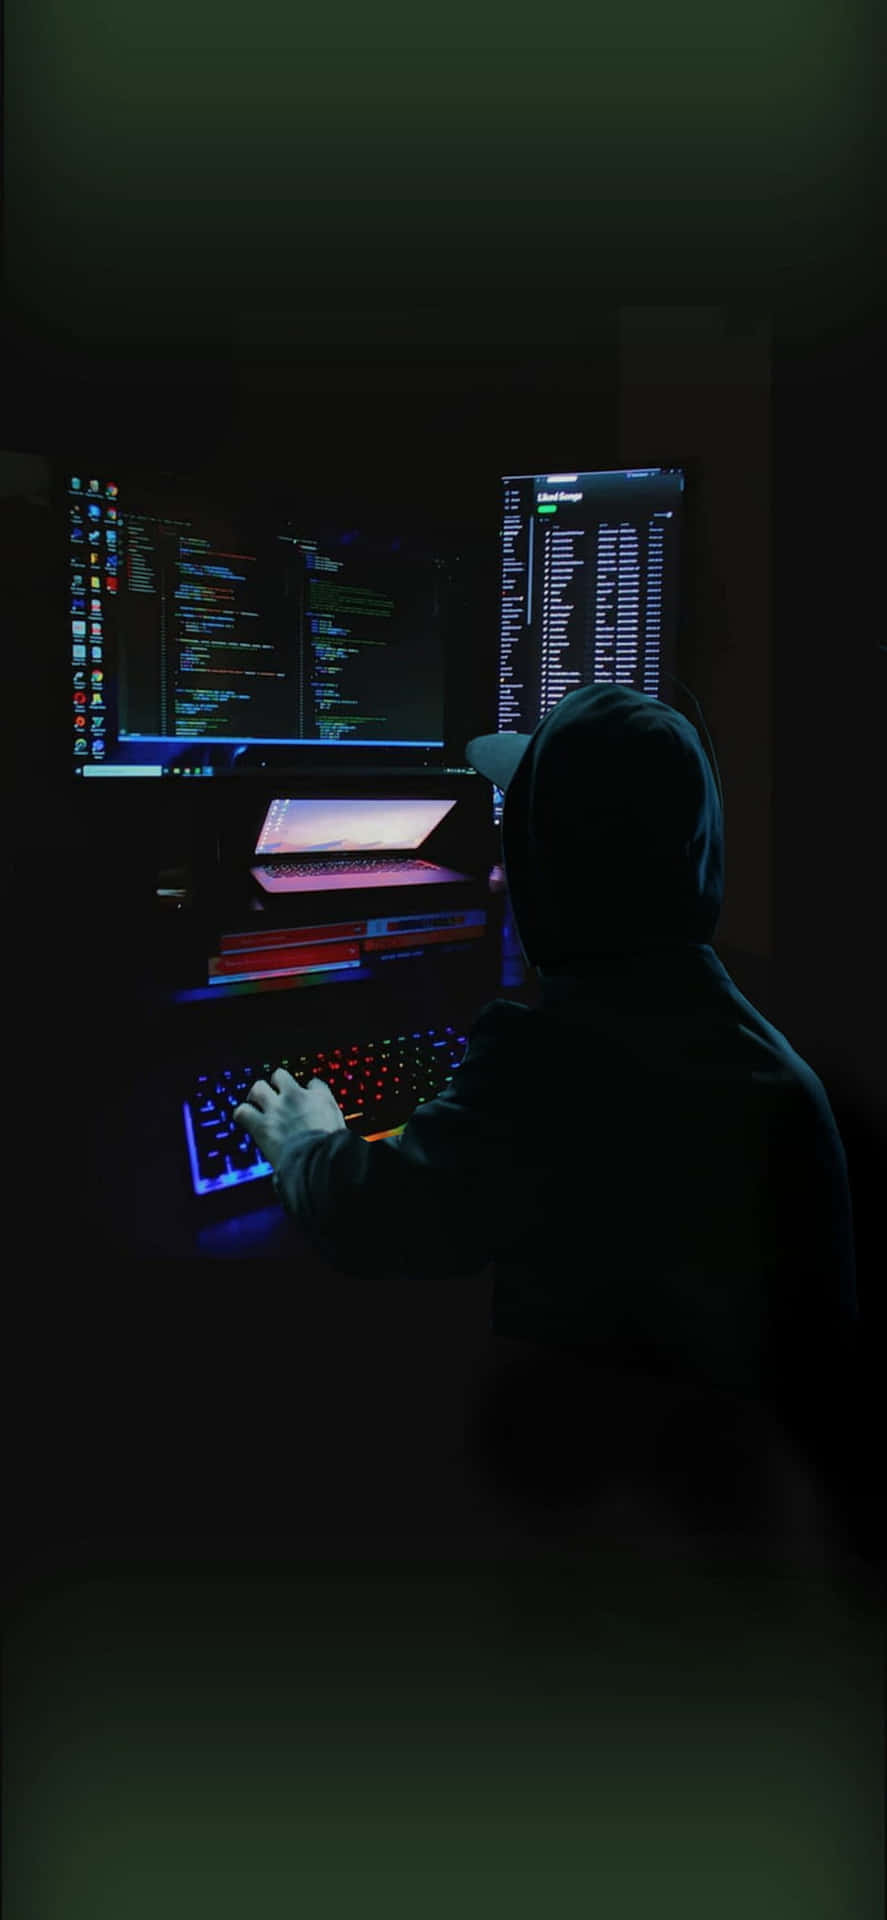 En mand sidder ved en computer i mørket.